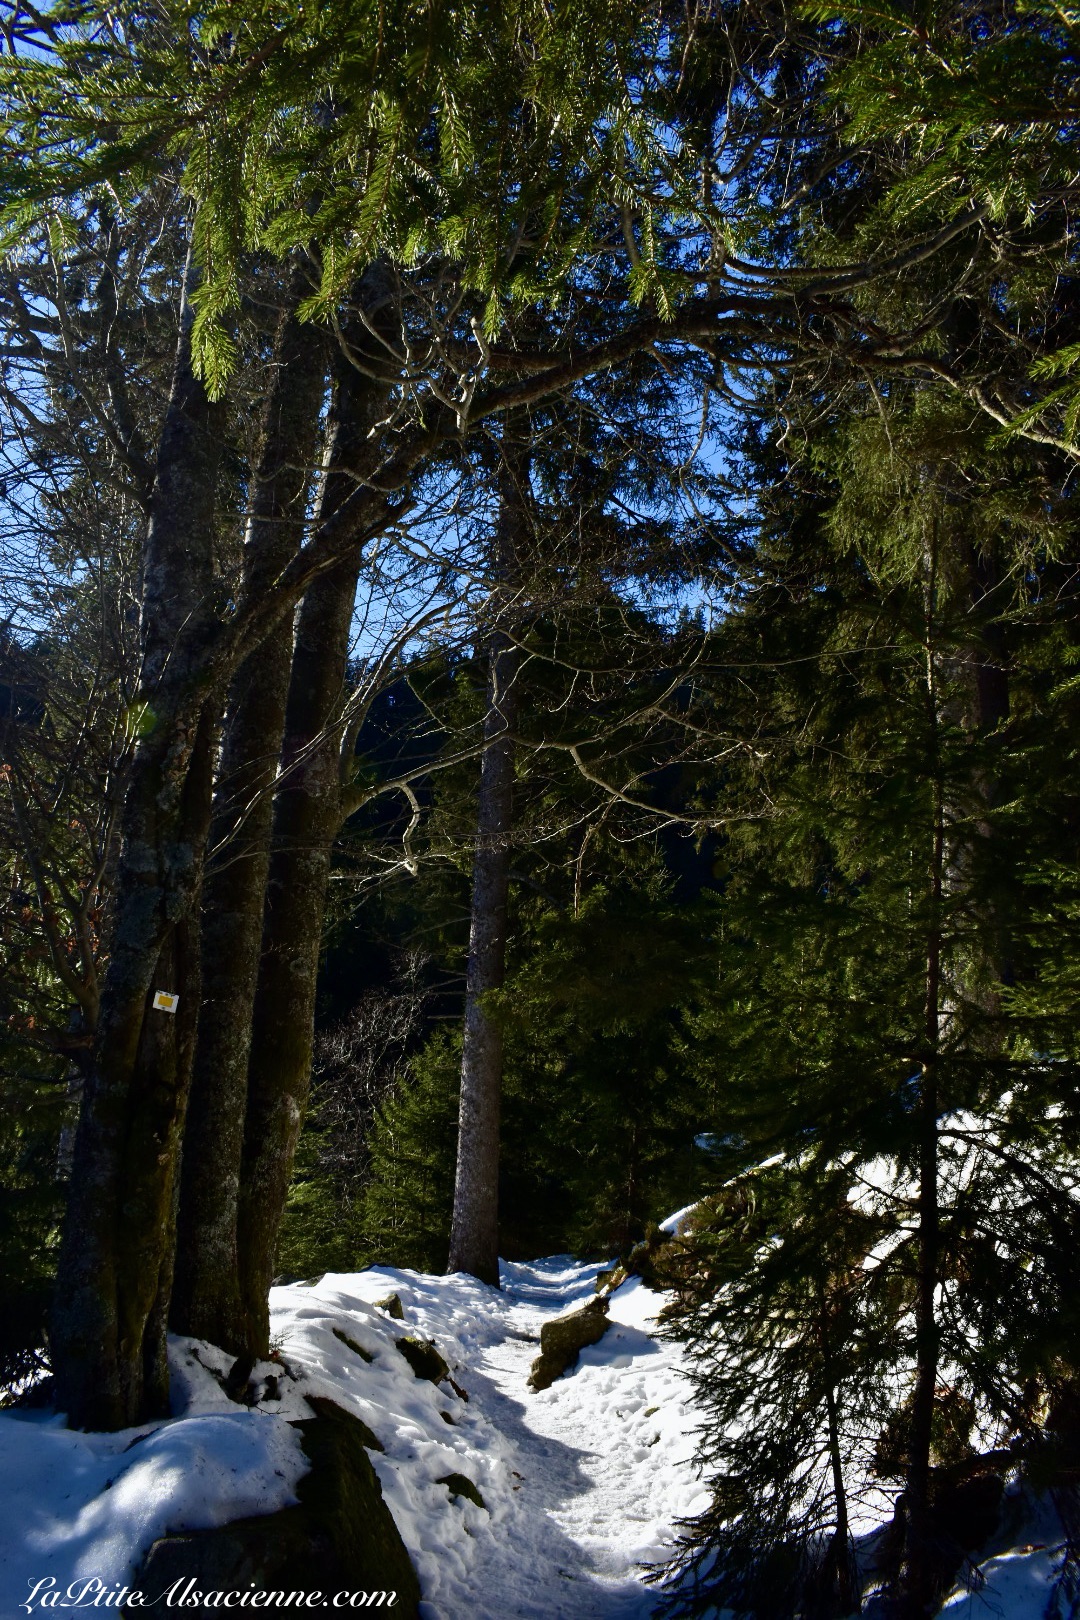 Randonnée en Direction le sentier Cornélius pour se rendre au Lac Noir depuis le Lac Blanc - Sous le soleil, nous marchions dans de la neige glacée. Photo Cendrine Miesch le 19 décembre 2021